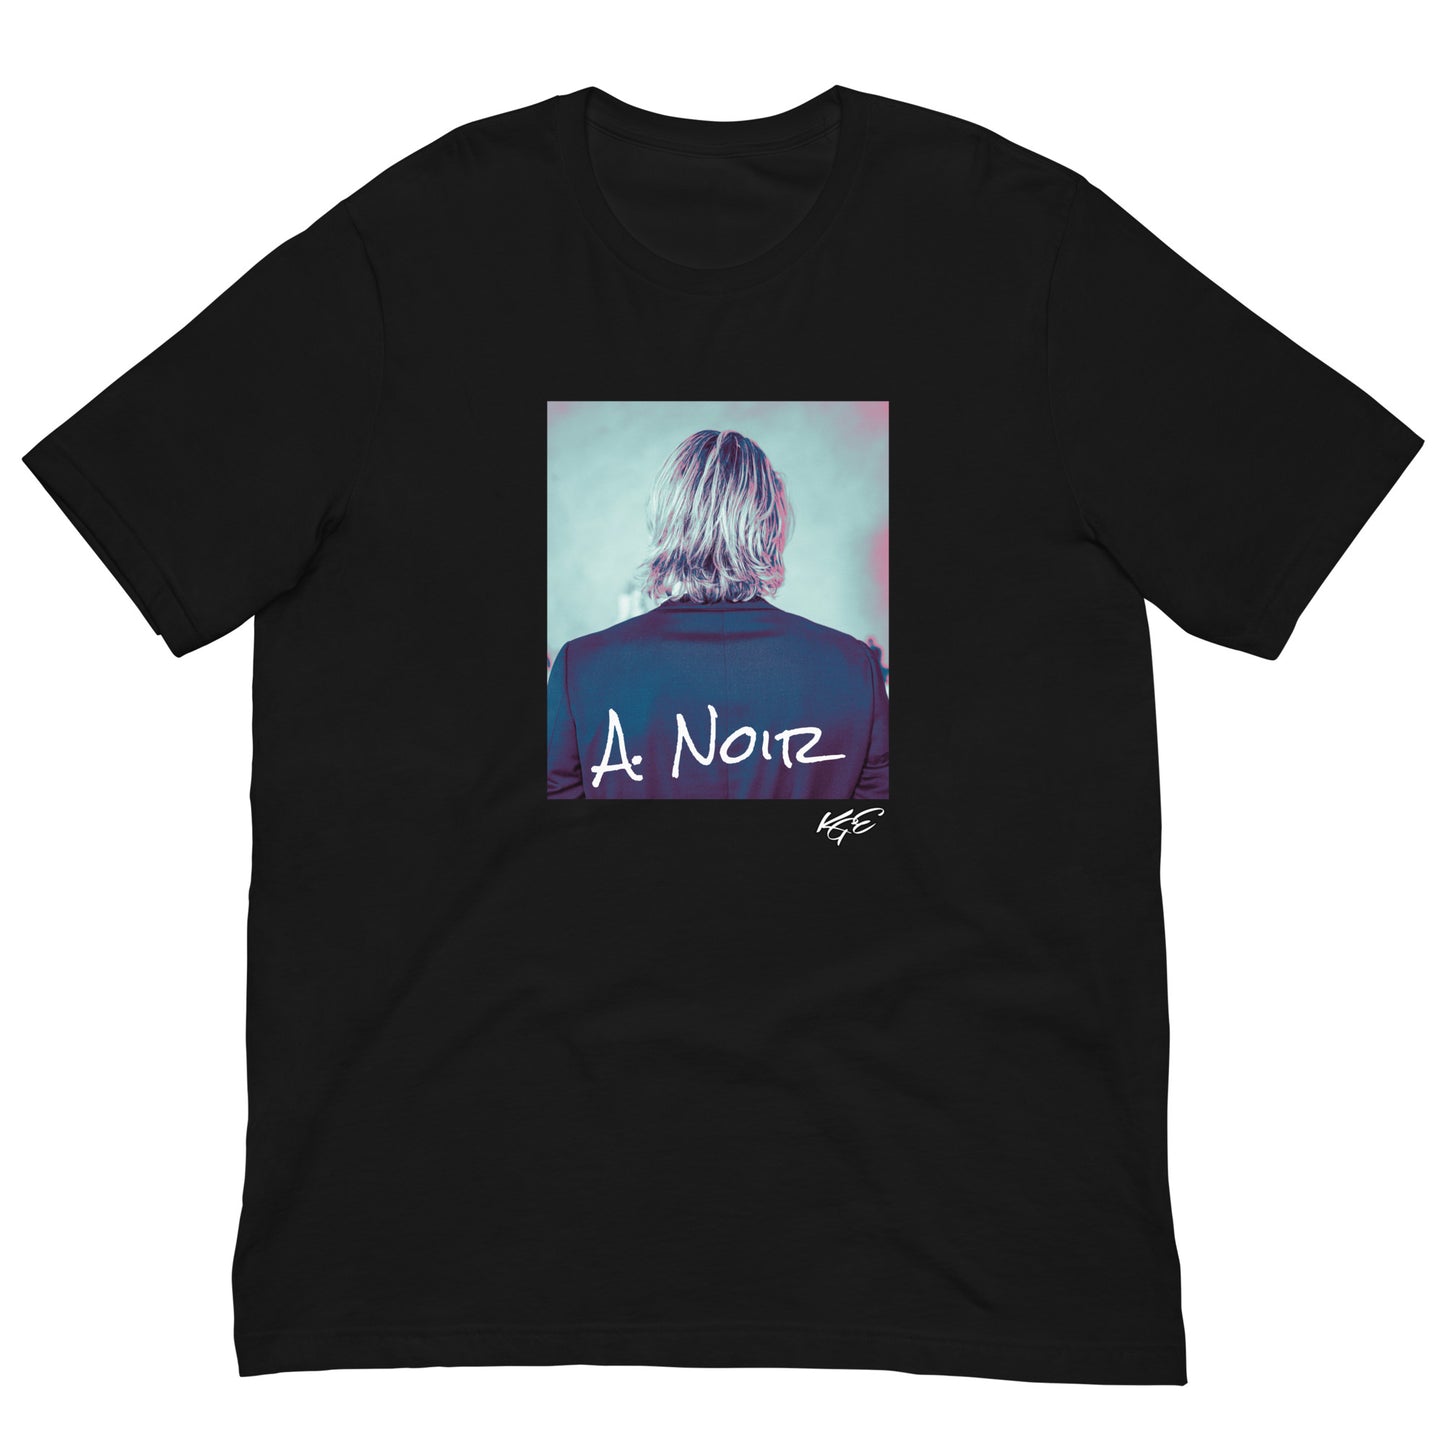 (New) A. Noir premium t-shirt